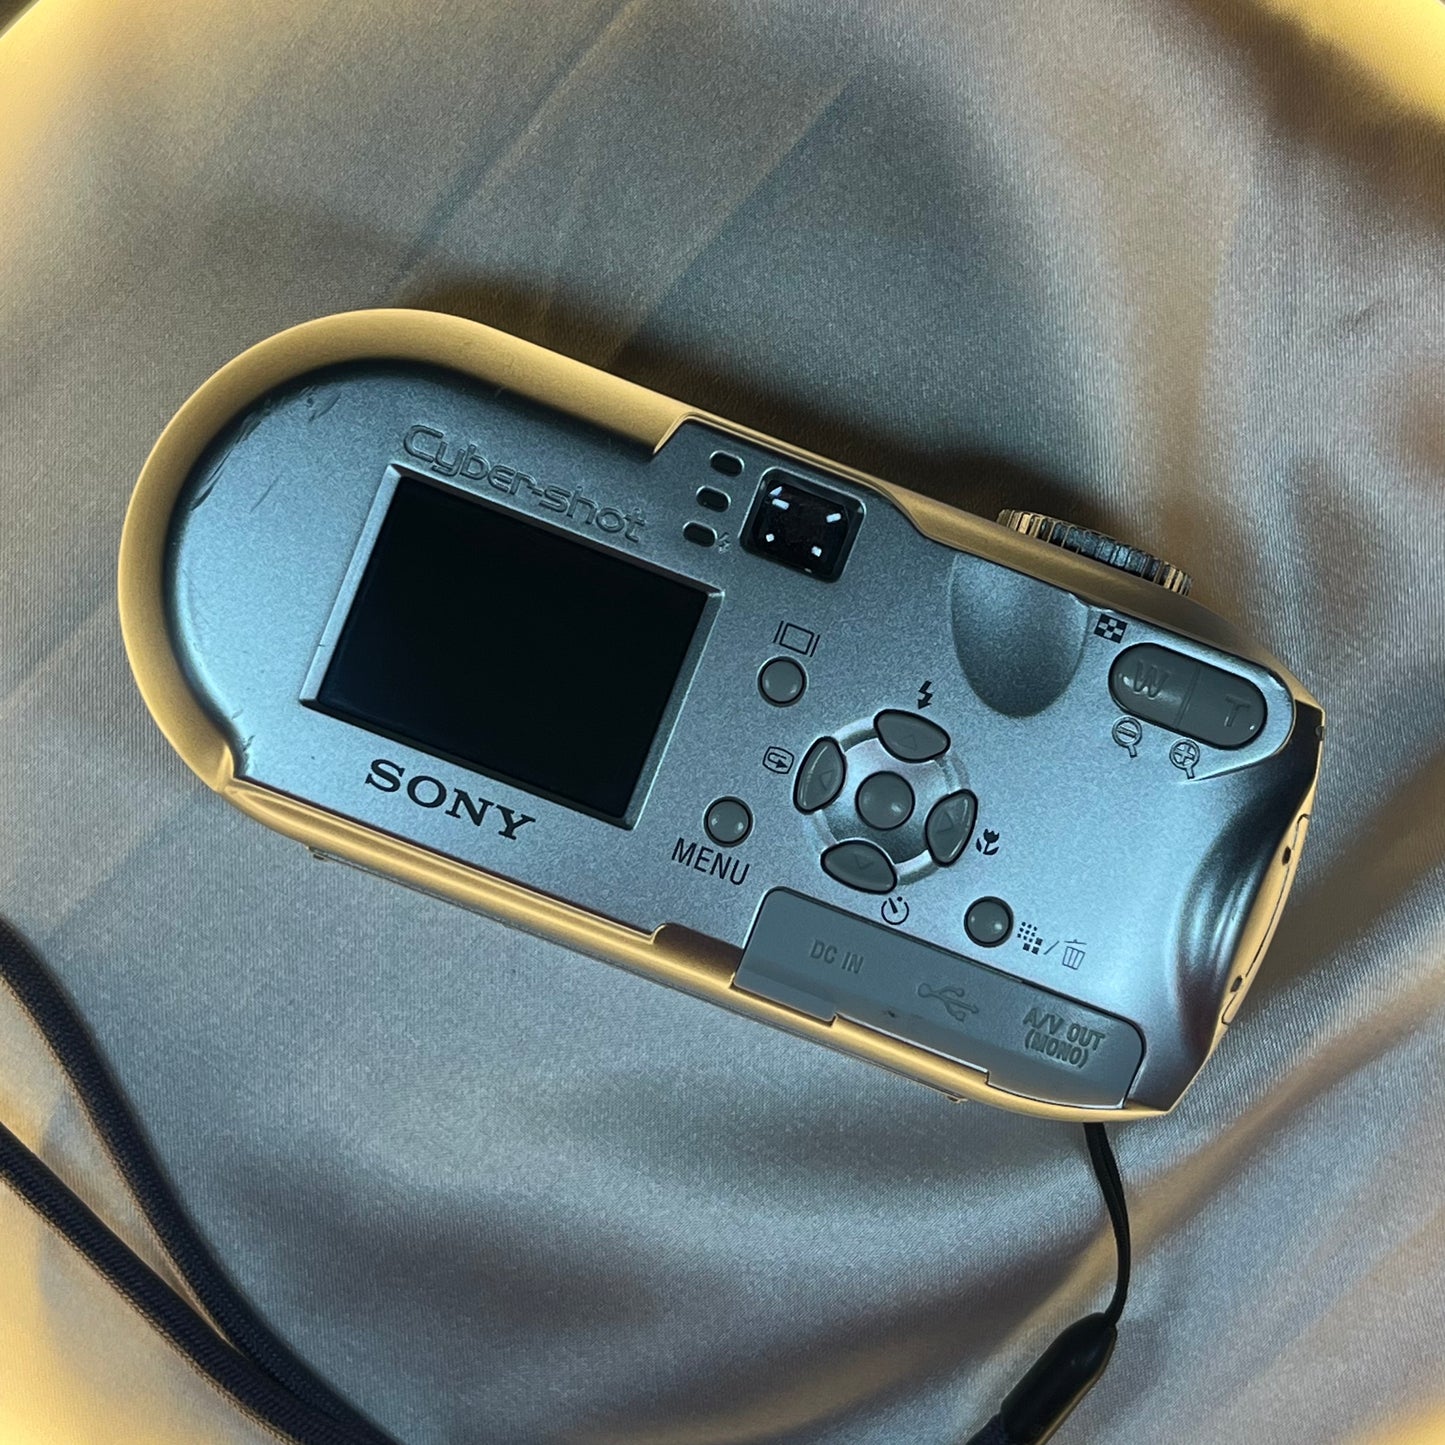 Sony Cybershot DSC-P73 4.1 mp Silver